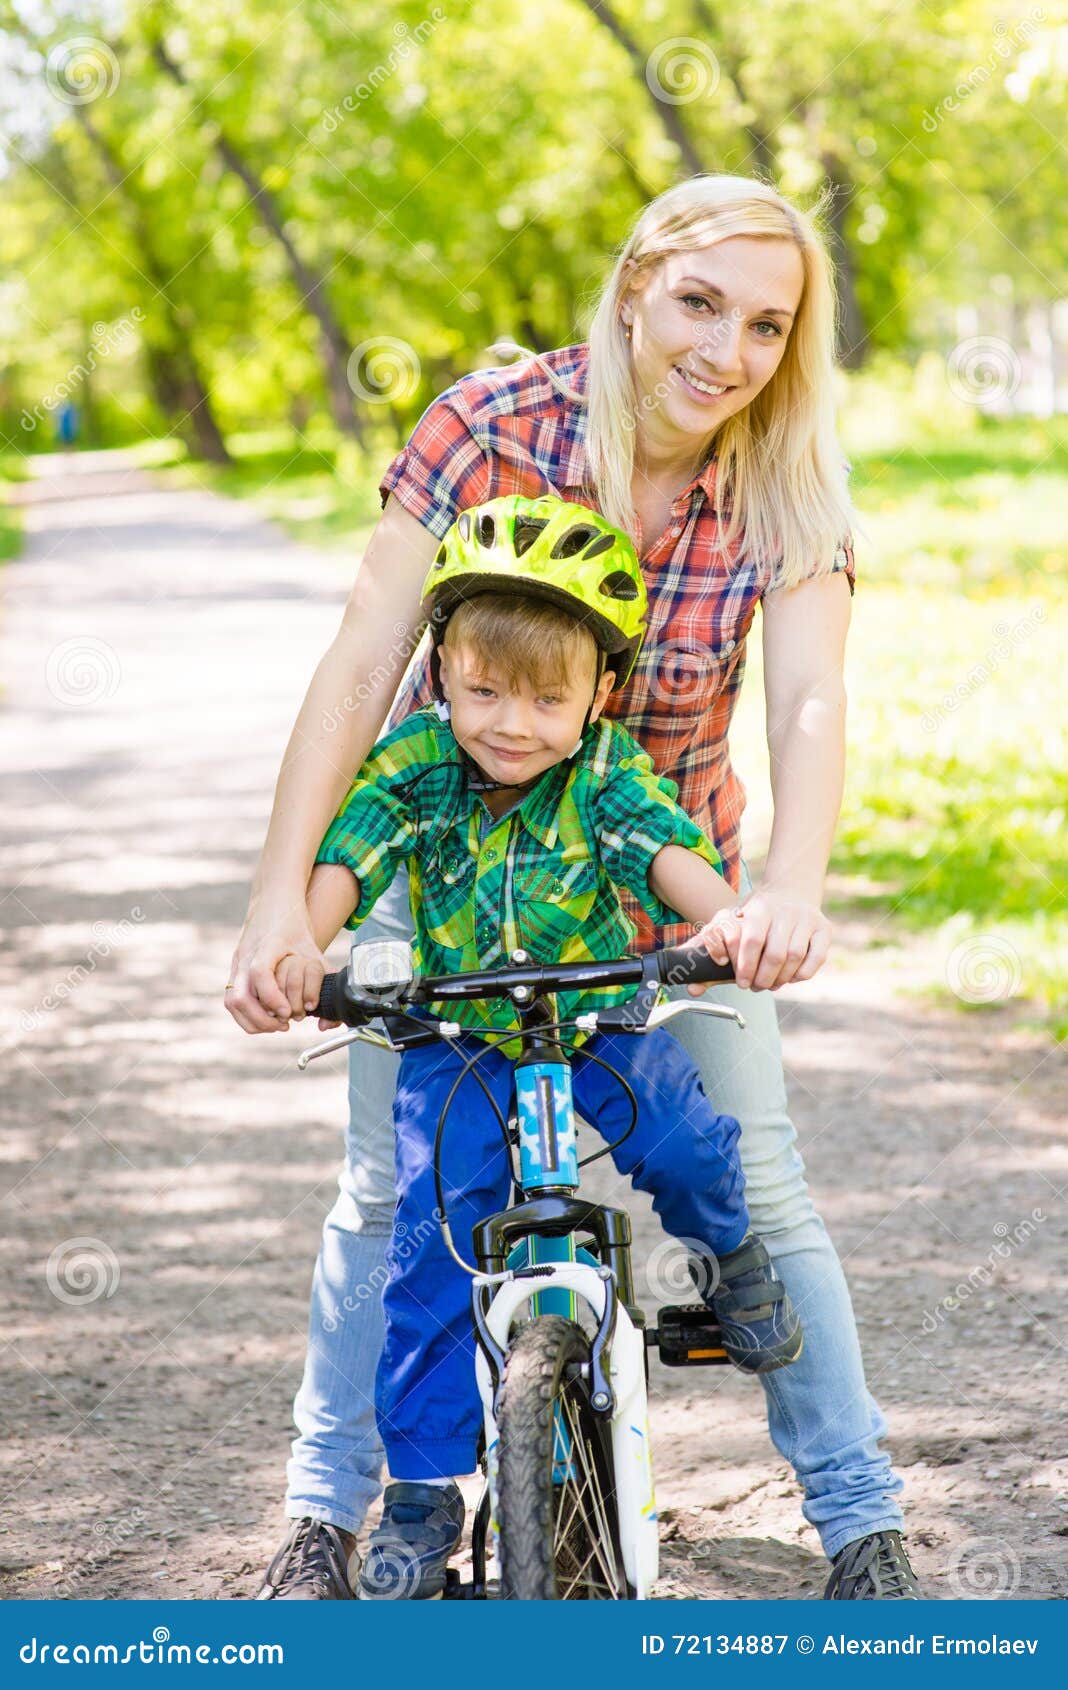 妈妈教她小儿子骑自行车. 库存图片. 图片 包括有 活动家, 单车手, 外面, 母亲, 孩子, 女演员 - 205704345